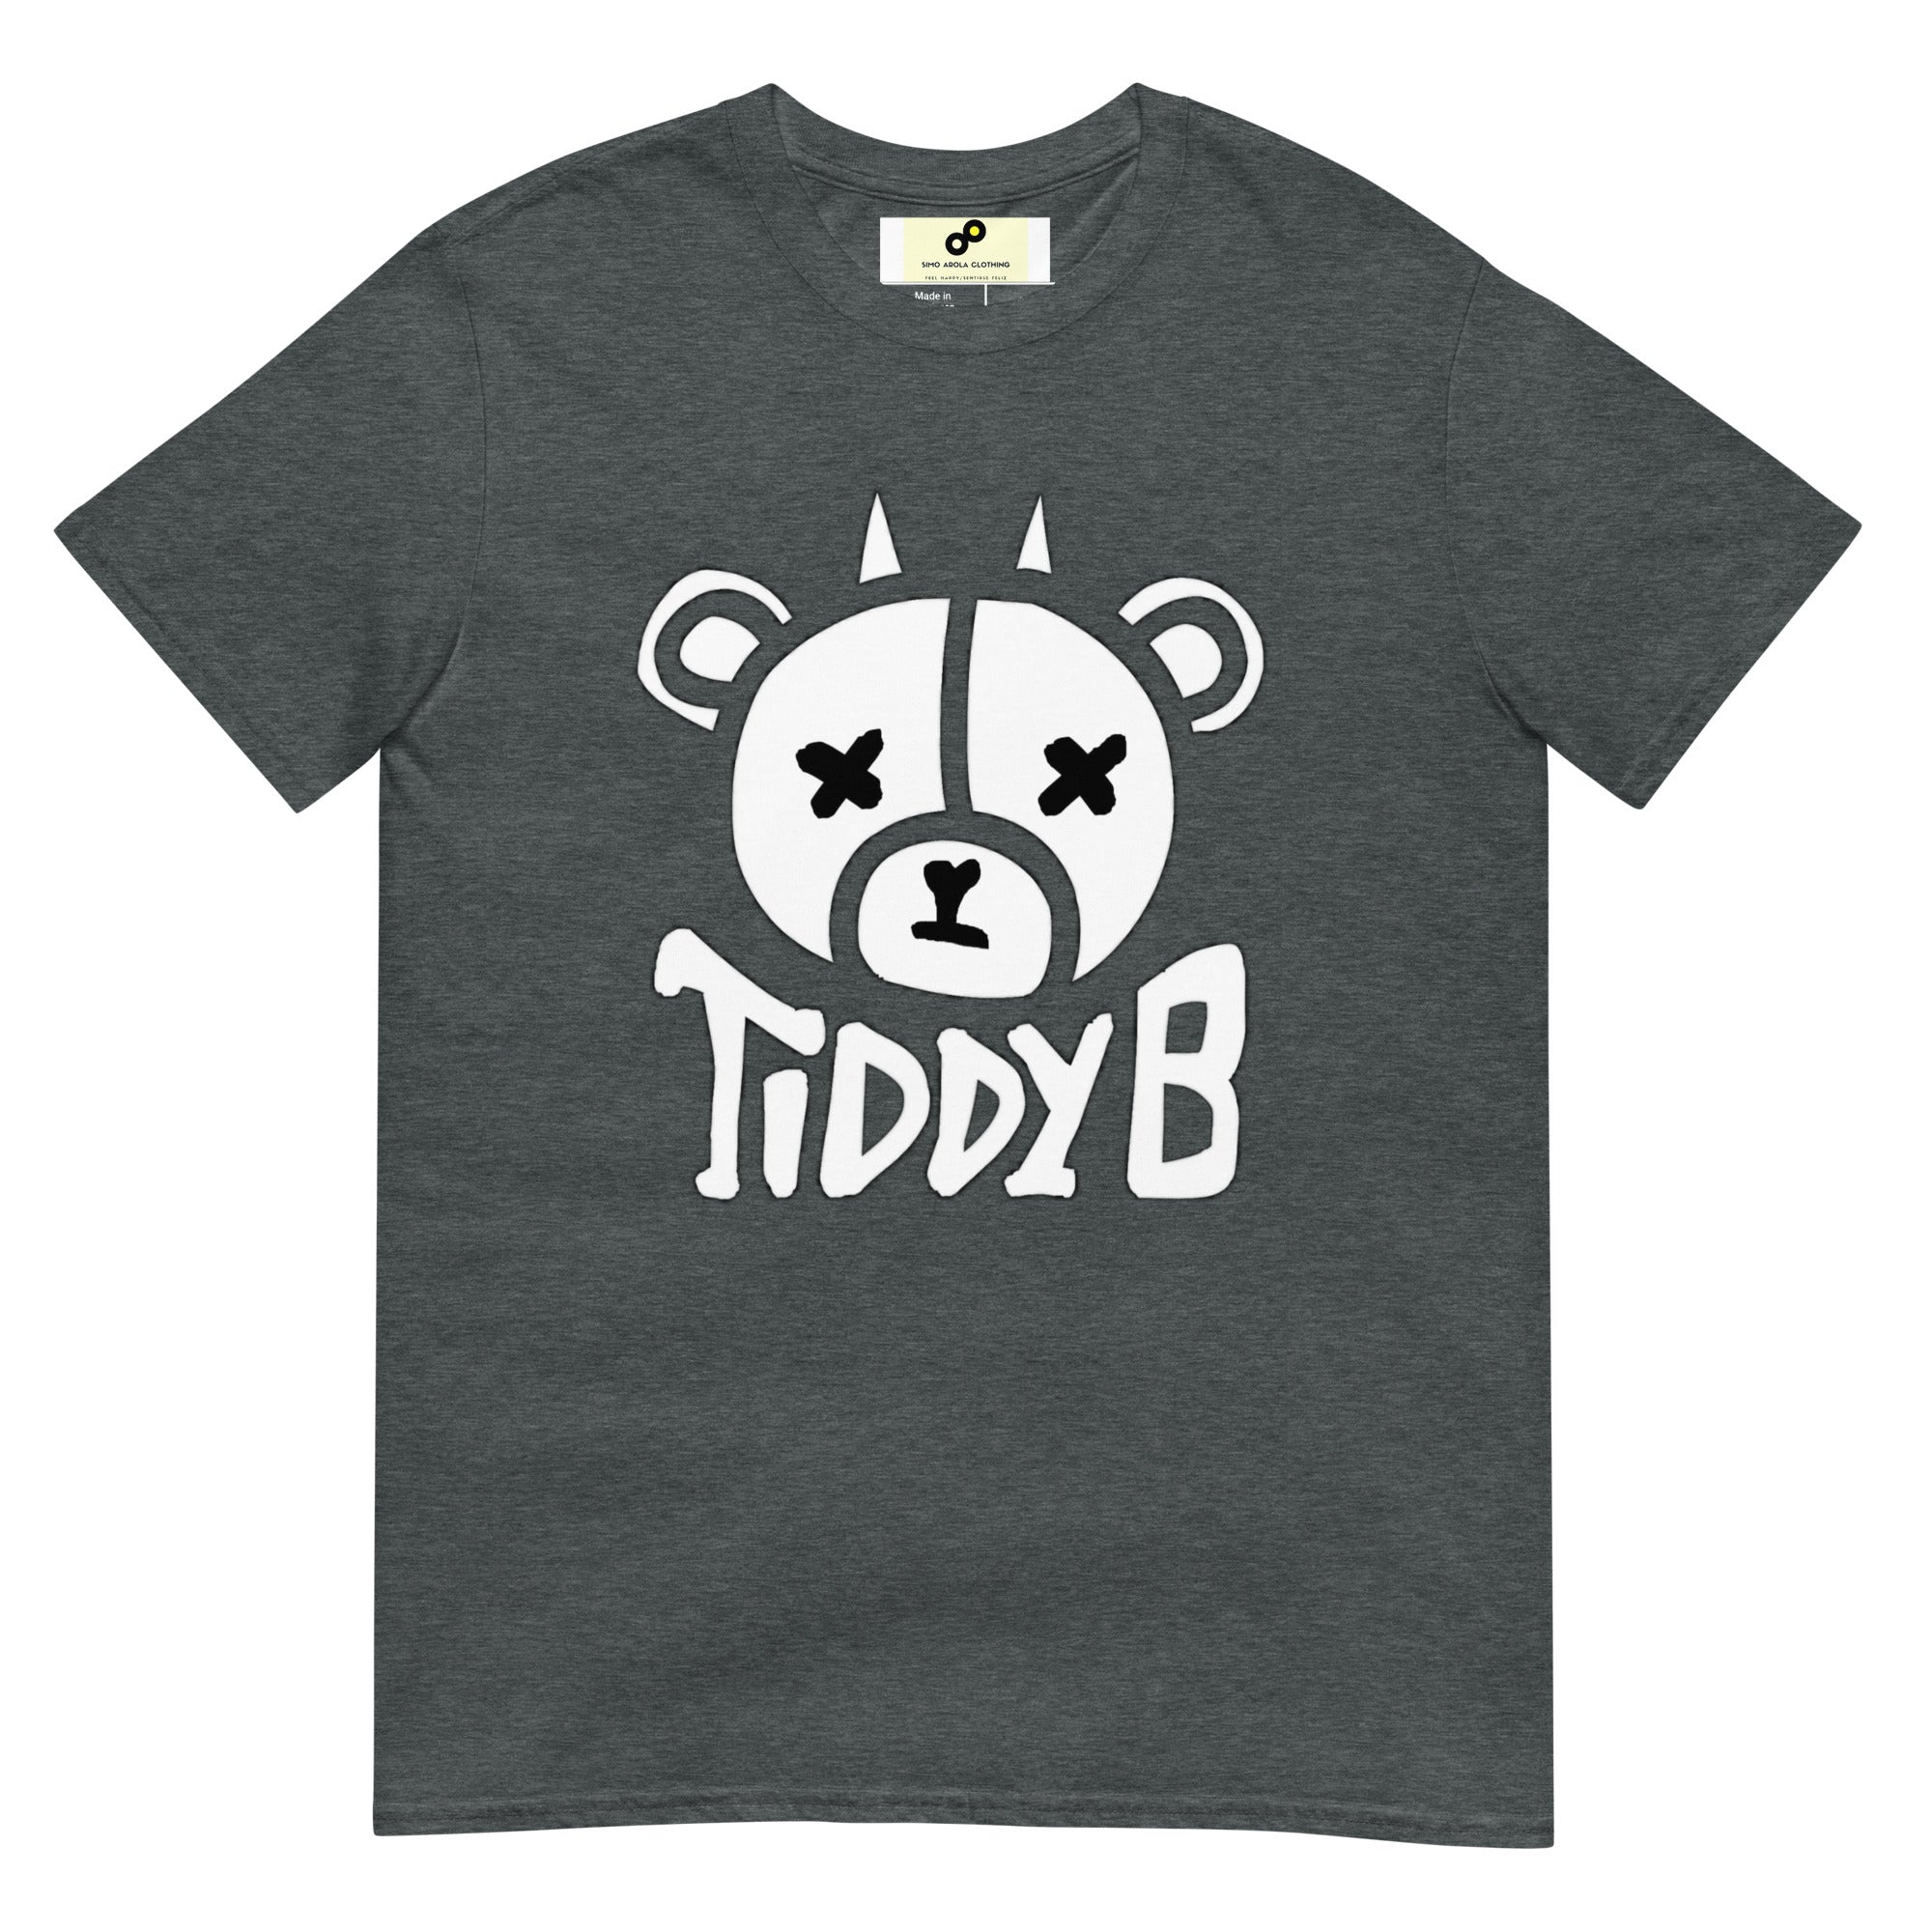 Tiddy B T-paita